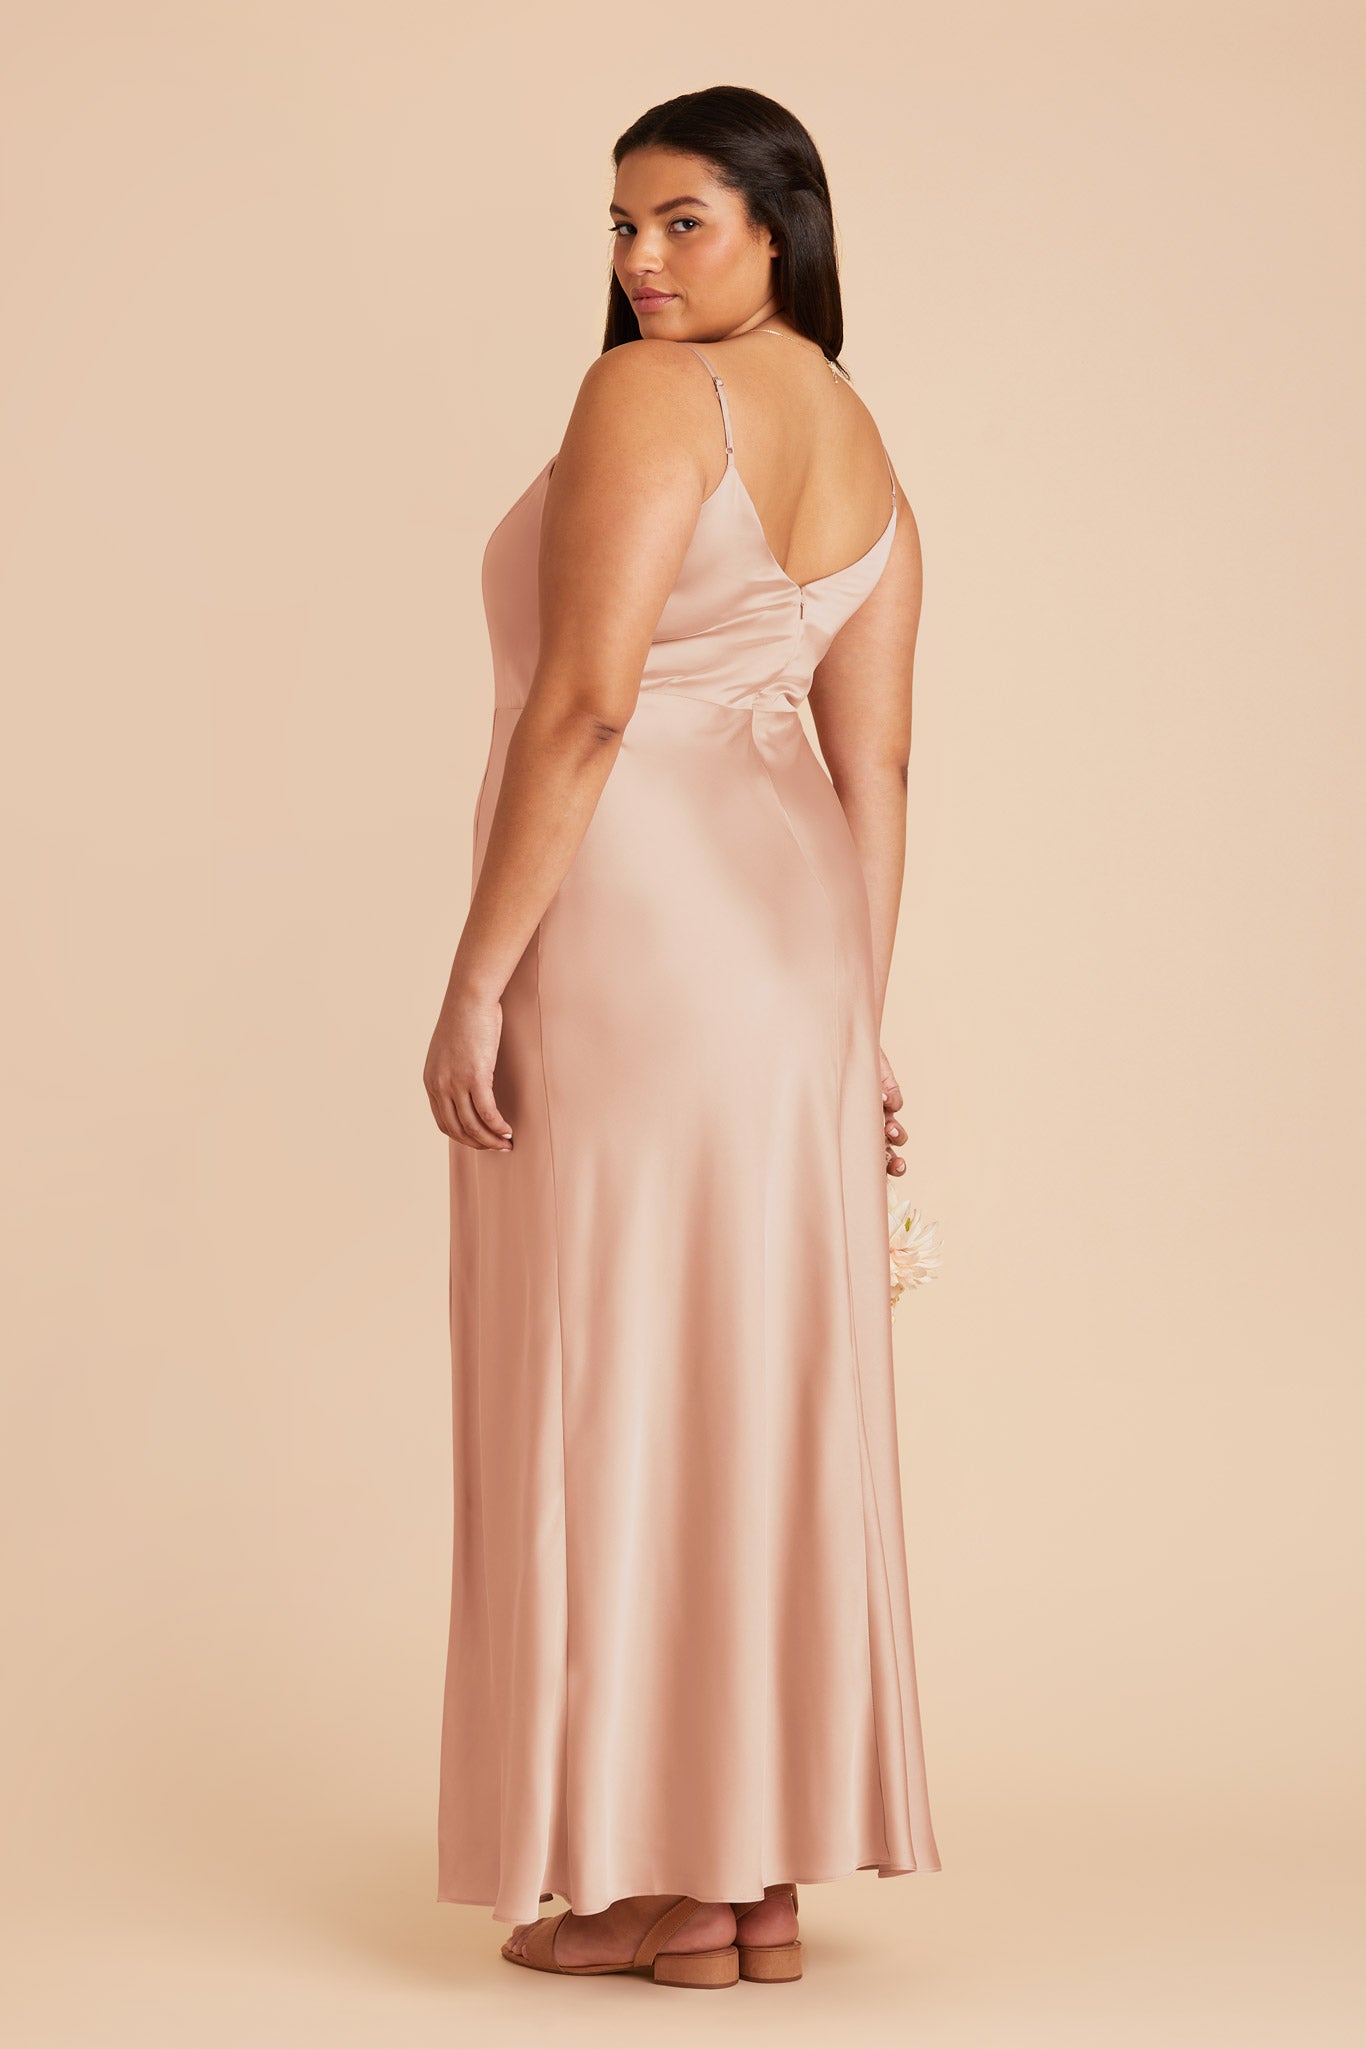 Rose Gold Jay Matte Satin Dress by Birdy Grey